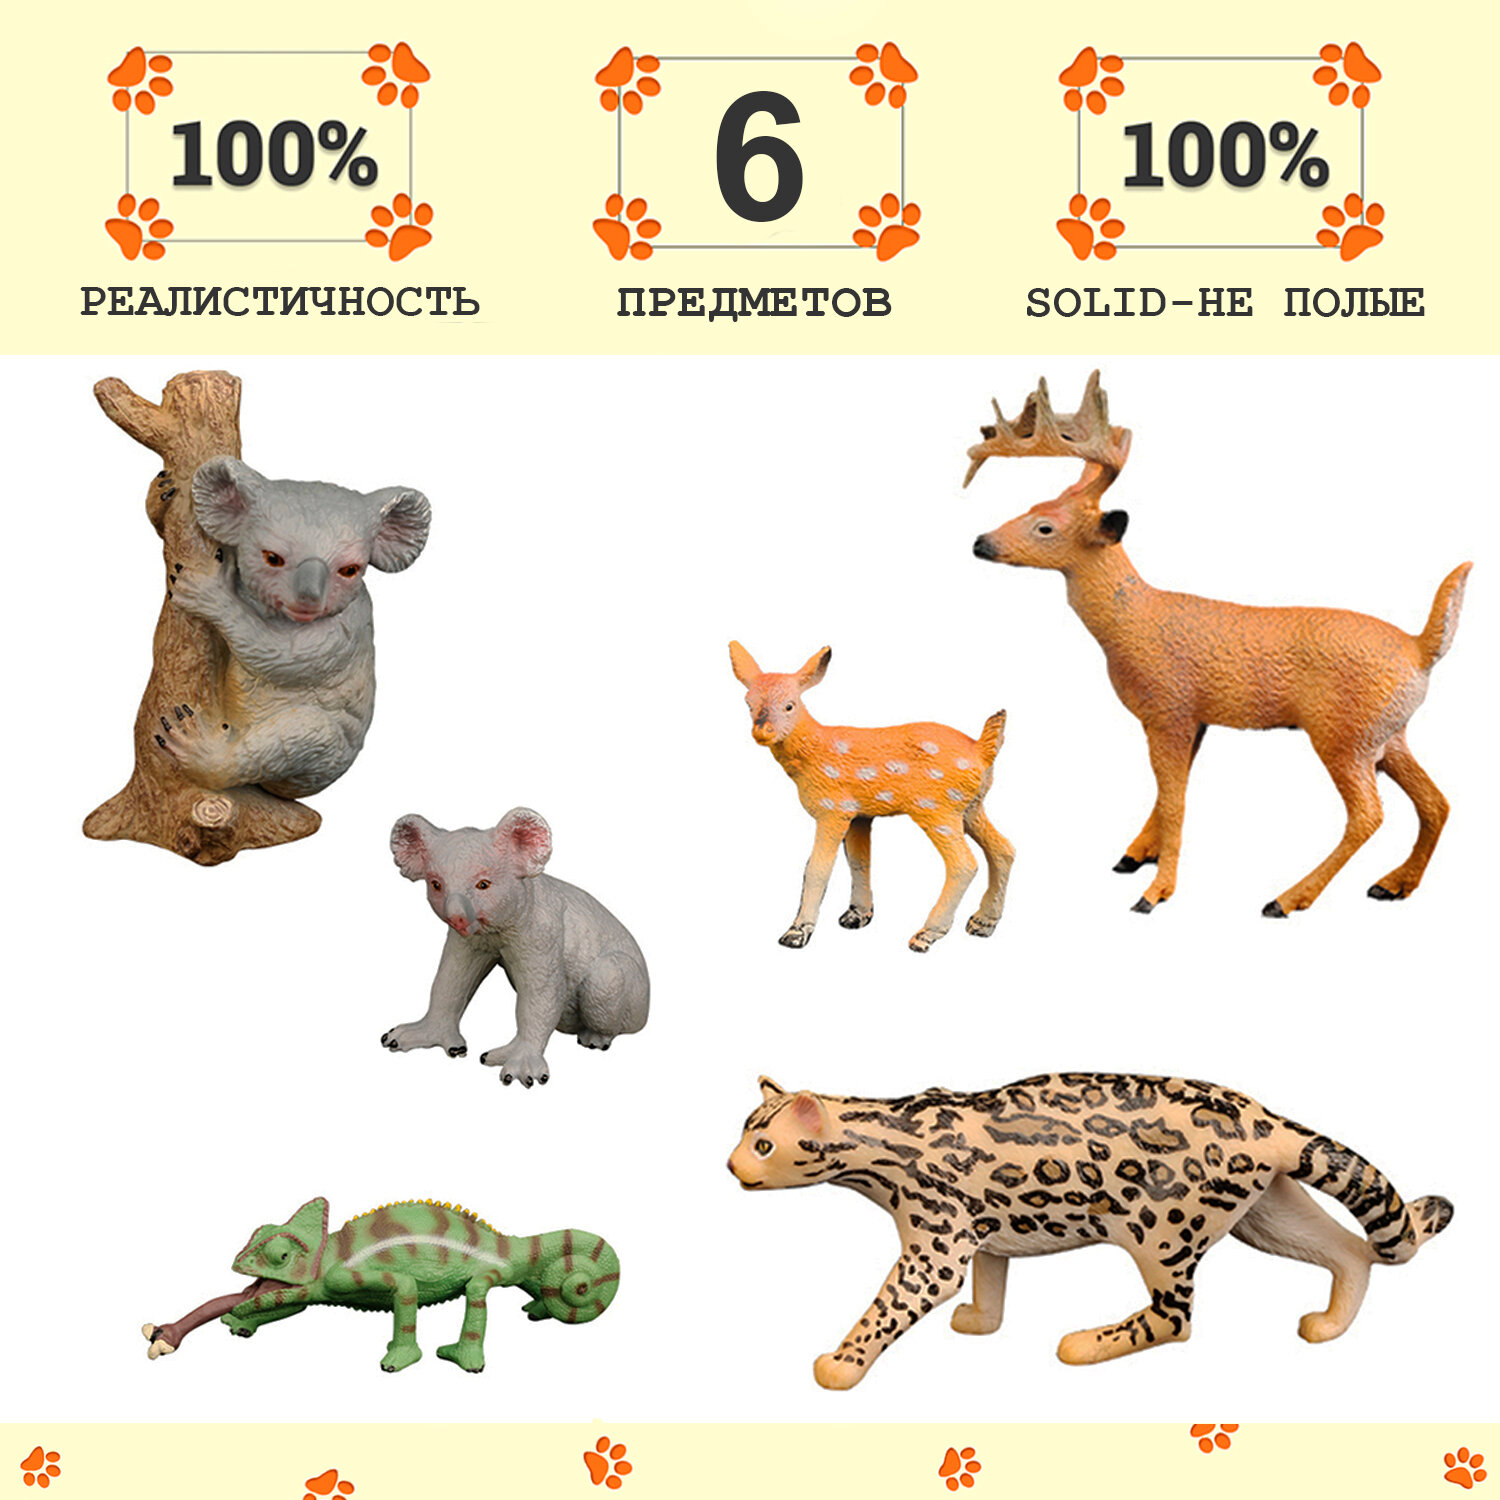 Набор фигурок животных серии "Мир диких животных": 2 коалы, 2 оленя, ягуар, хамелеон (набор из 6 фигурок)